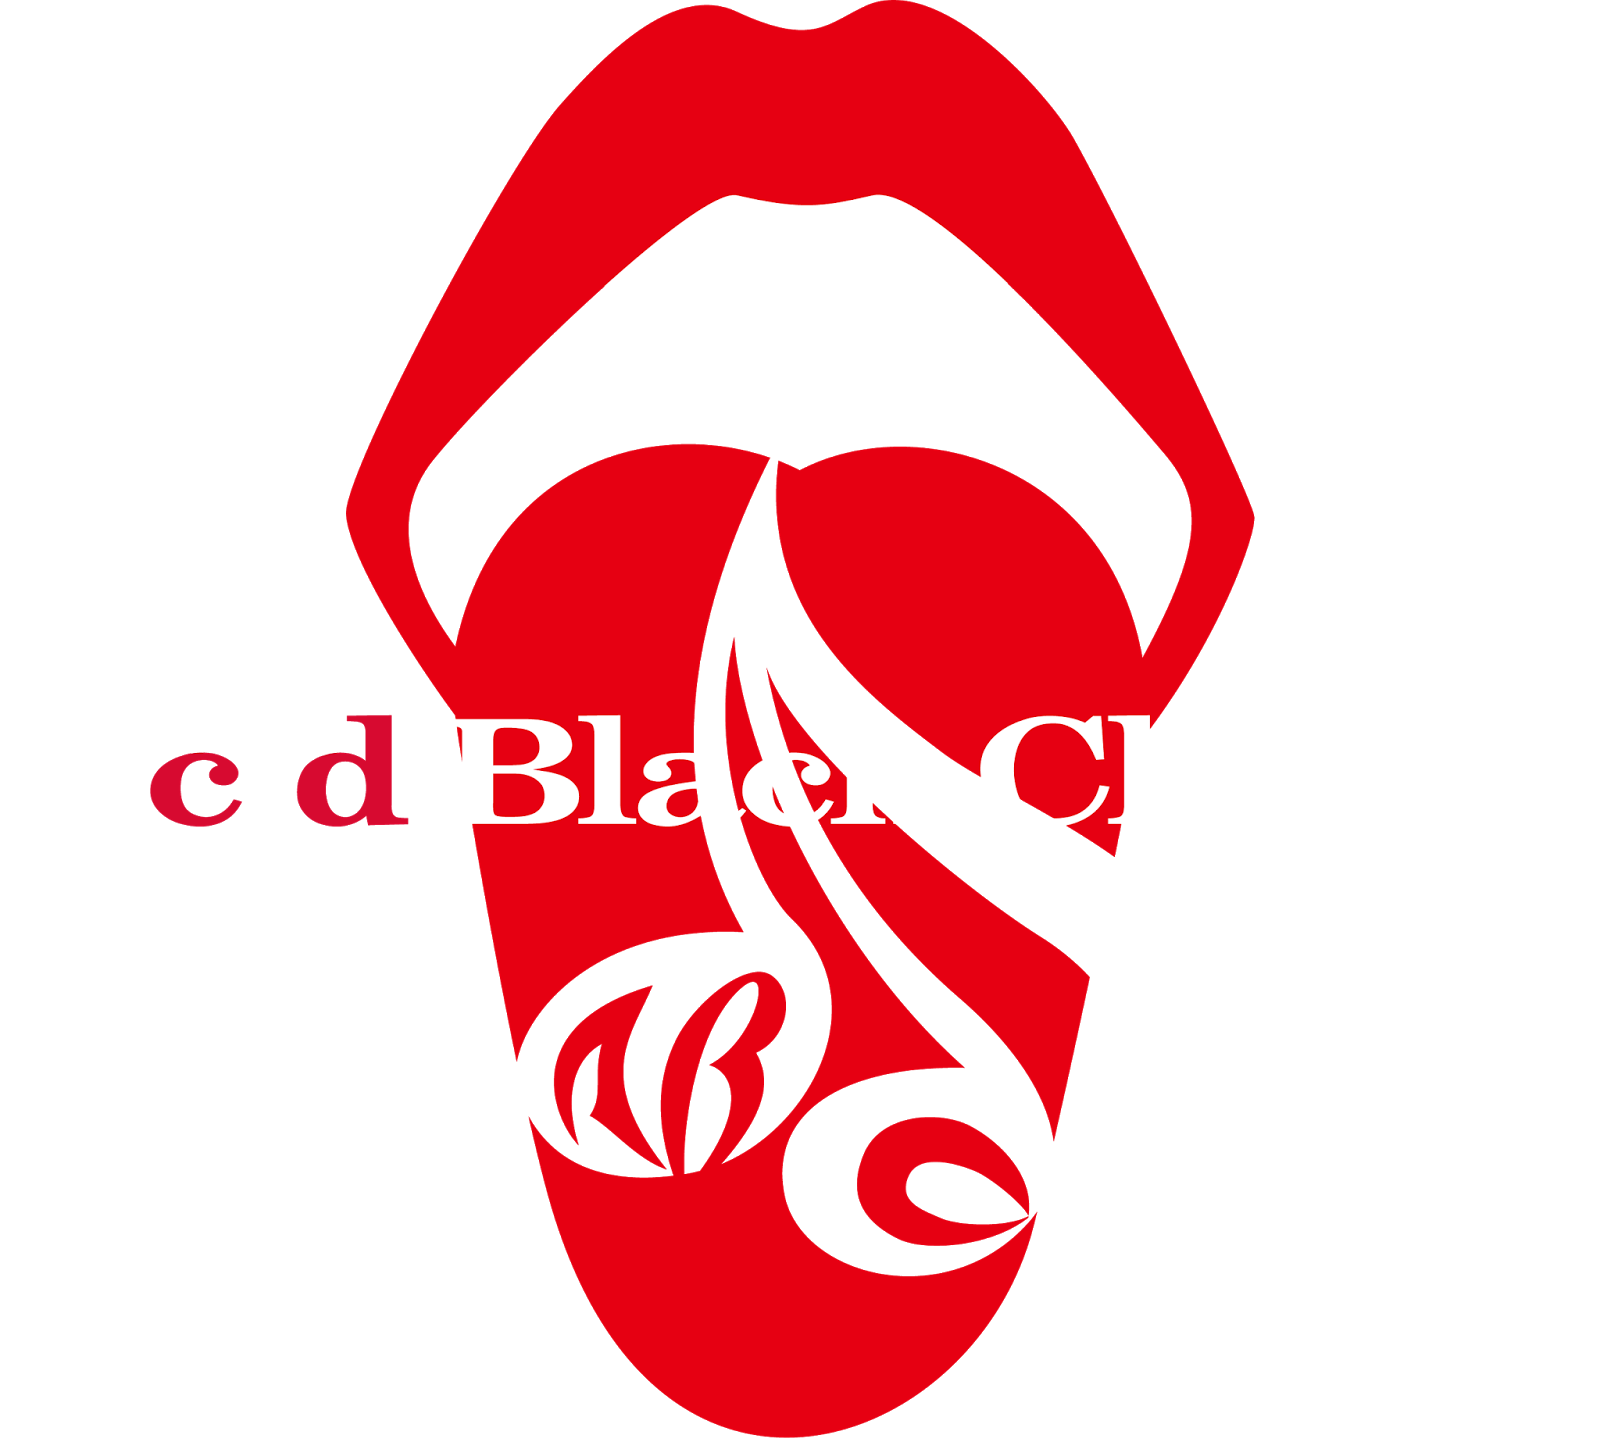 Logodol 全てが高画質 背景透過なアーティストのロゴをお届けするブログ Acid Black Cherry の高画質透過ロゴ ５種 キスマークのロゴもあるよ